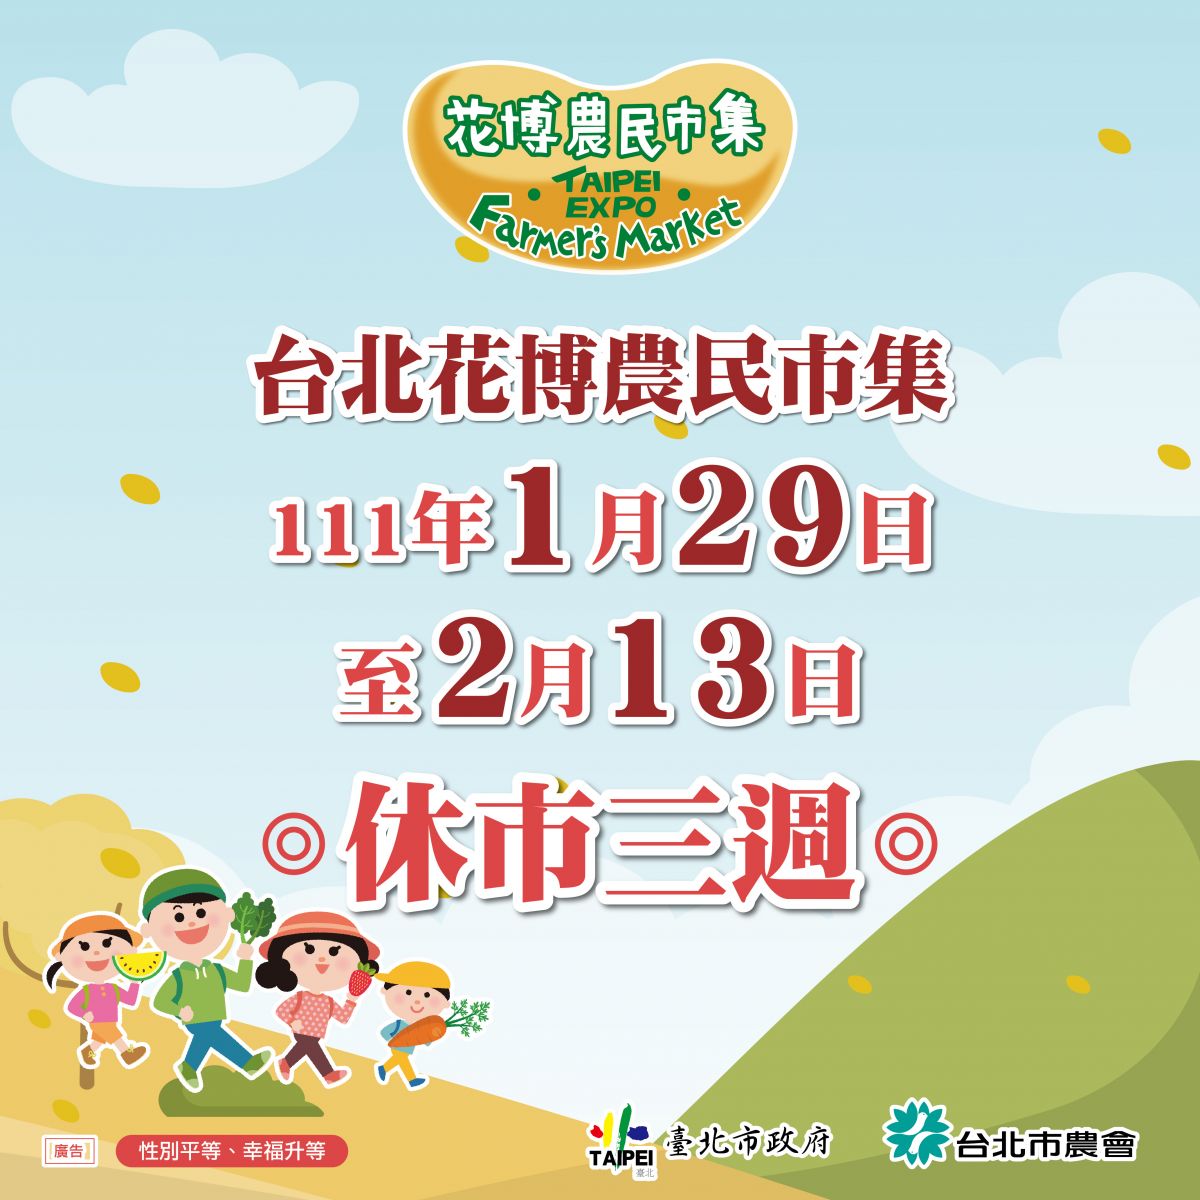 臺北花博農民市集1月29日到2月13日休市，2月19日恢復營業。